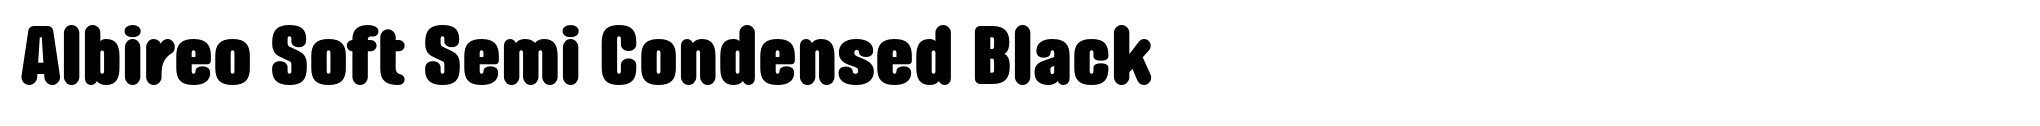 Albireo Soft Semi Condensed Black image